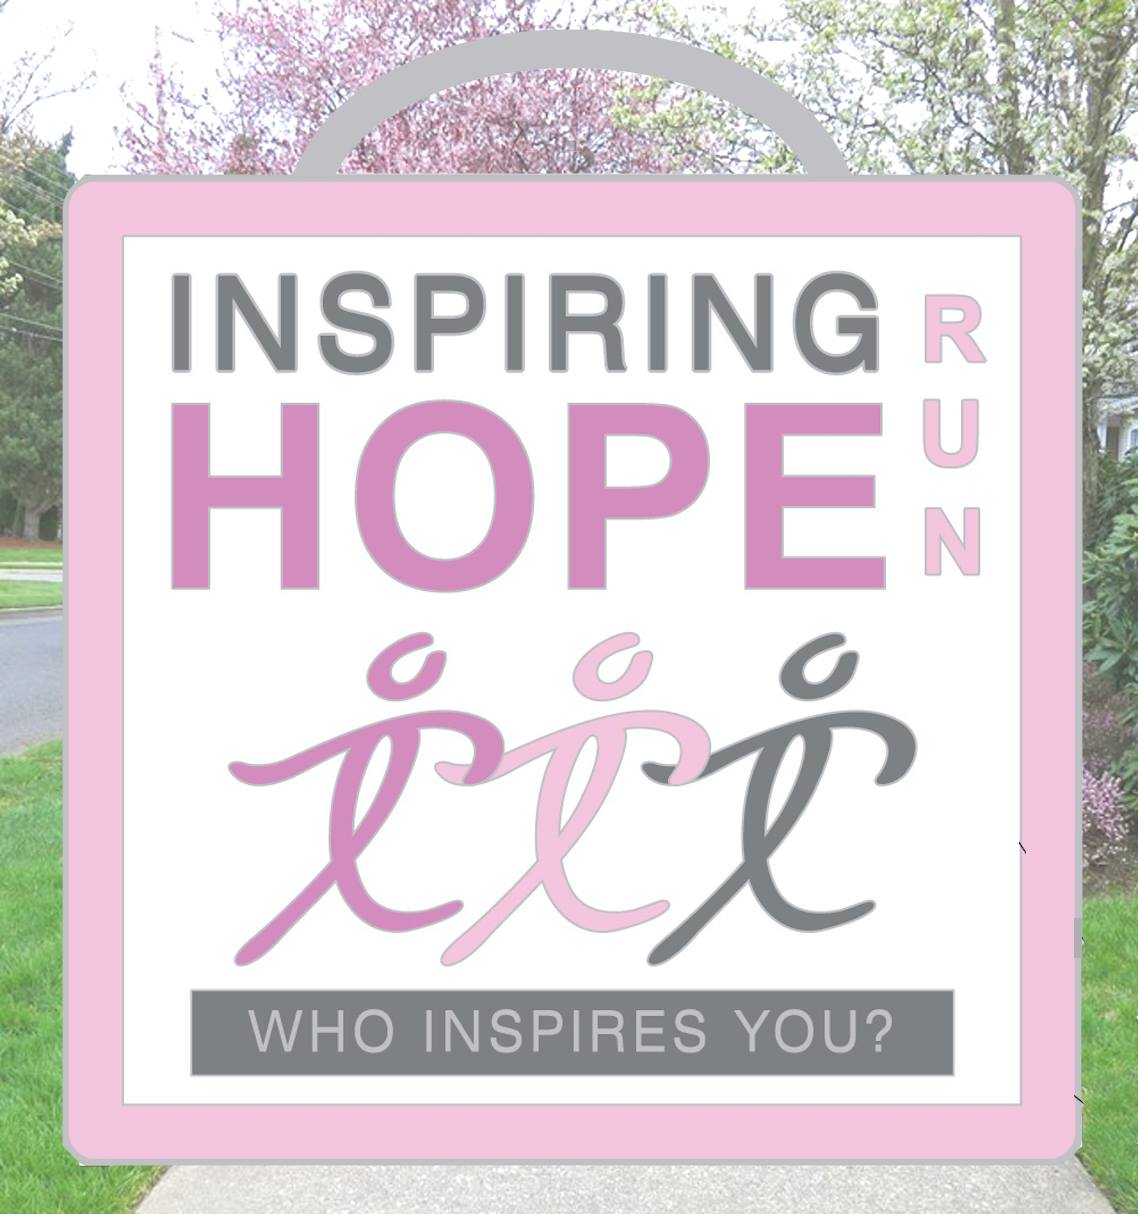 Inspiring Hope Run logo on RaceRaves